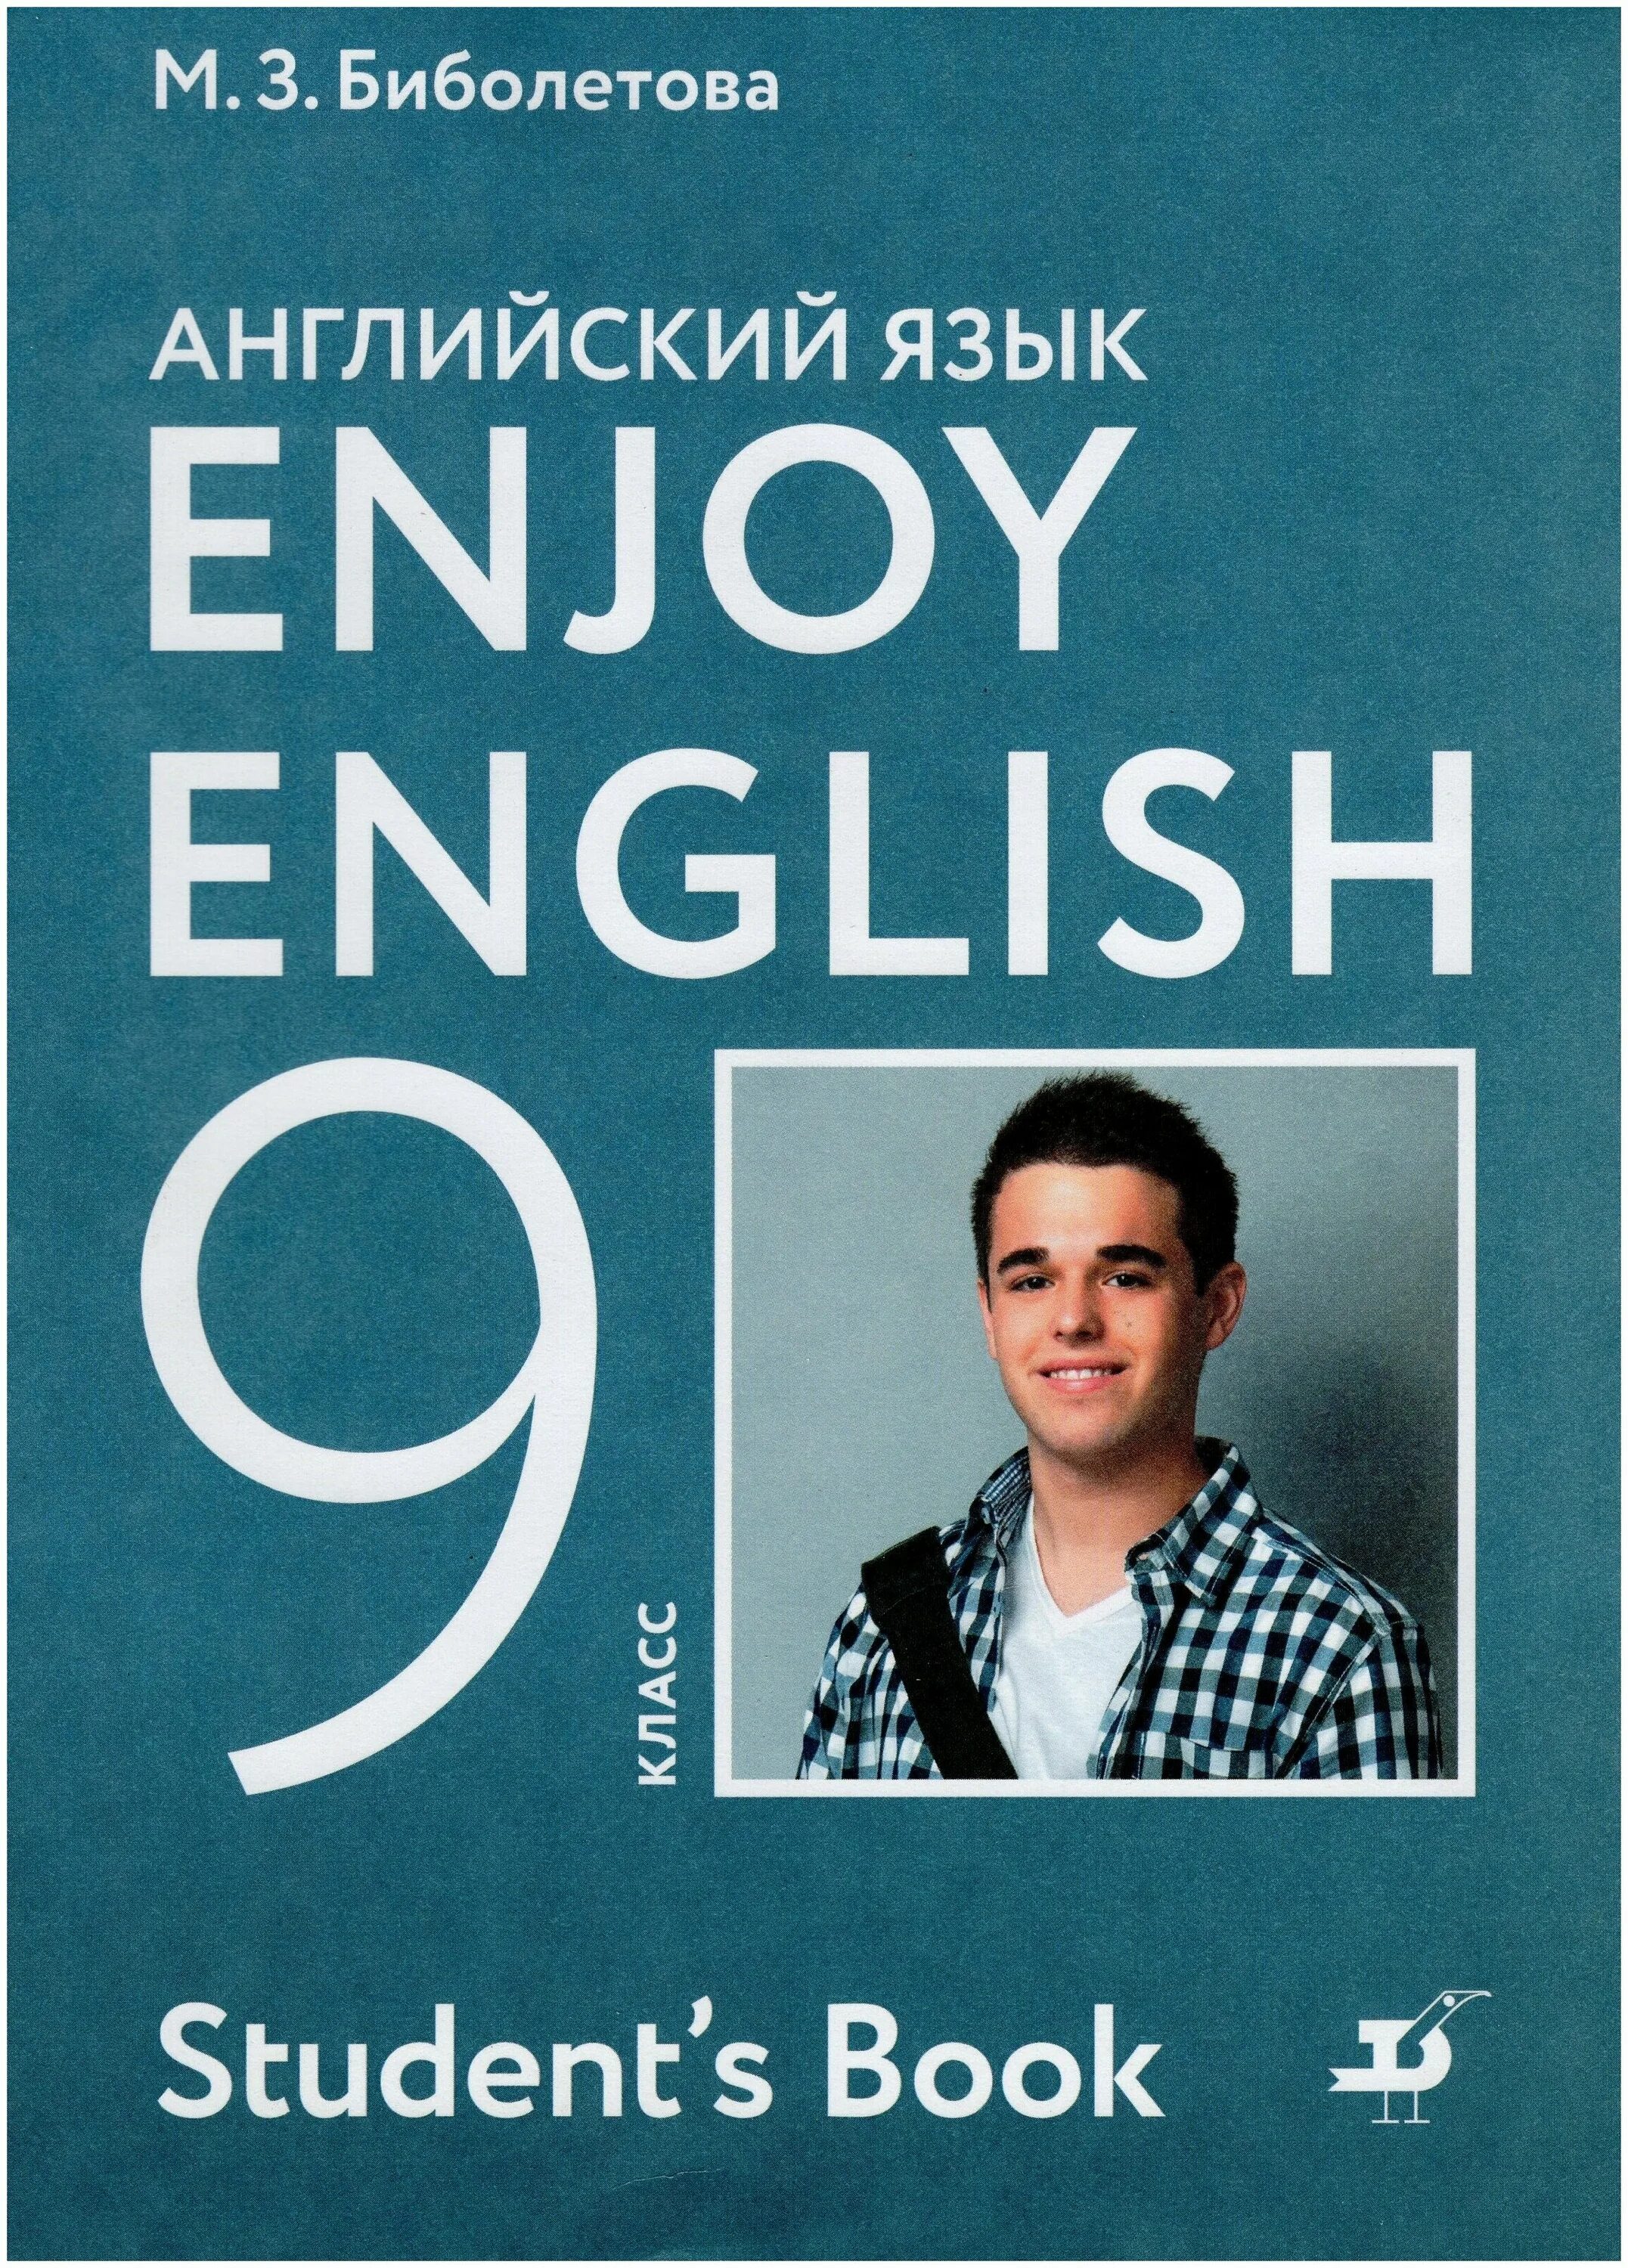 Английский язык 7 класс библиотова. Enjoy English 9 класс. Enjoy English учебник. Биболетова учебник. Учебник enjoy English 9.